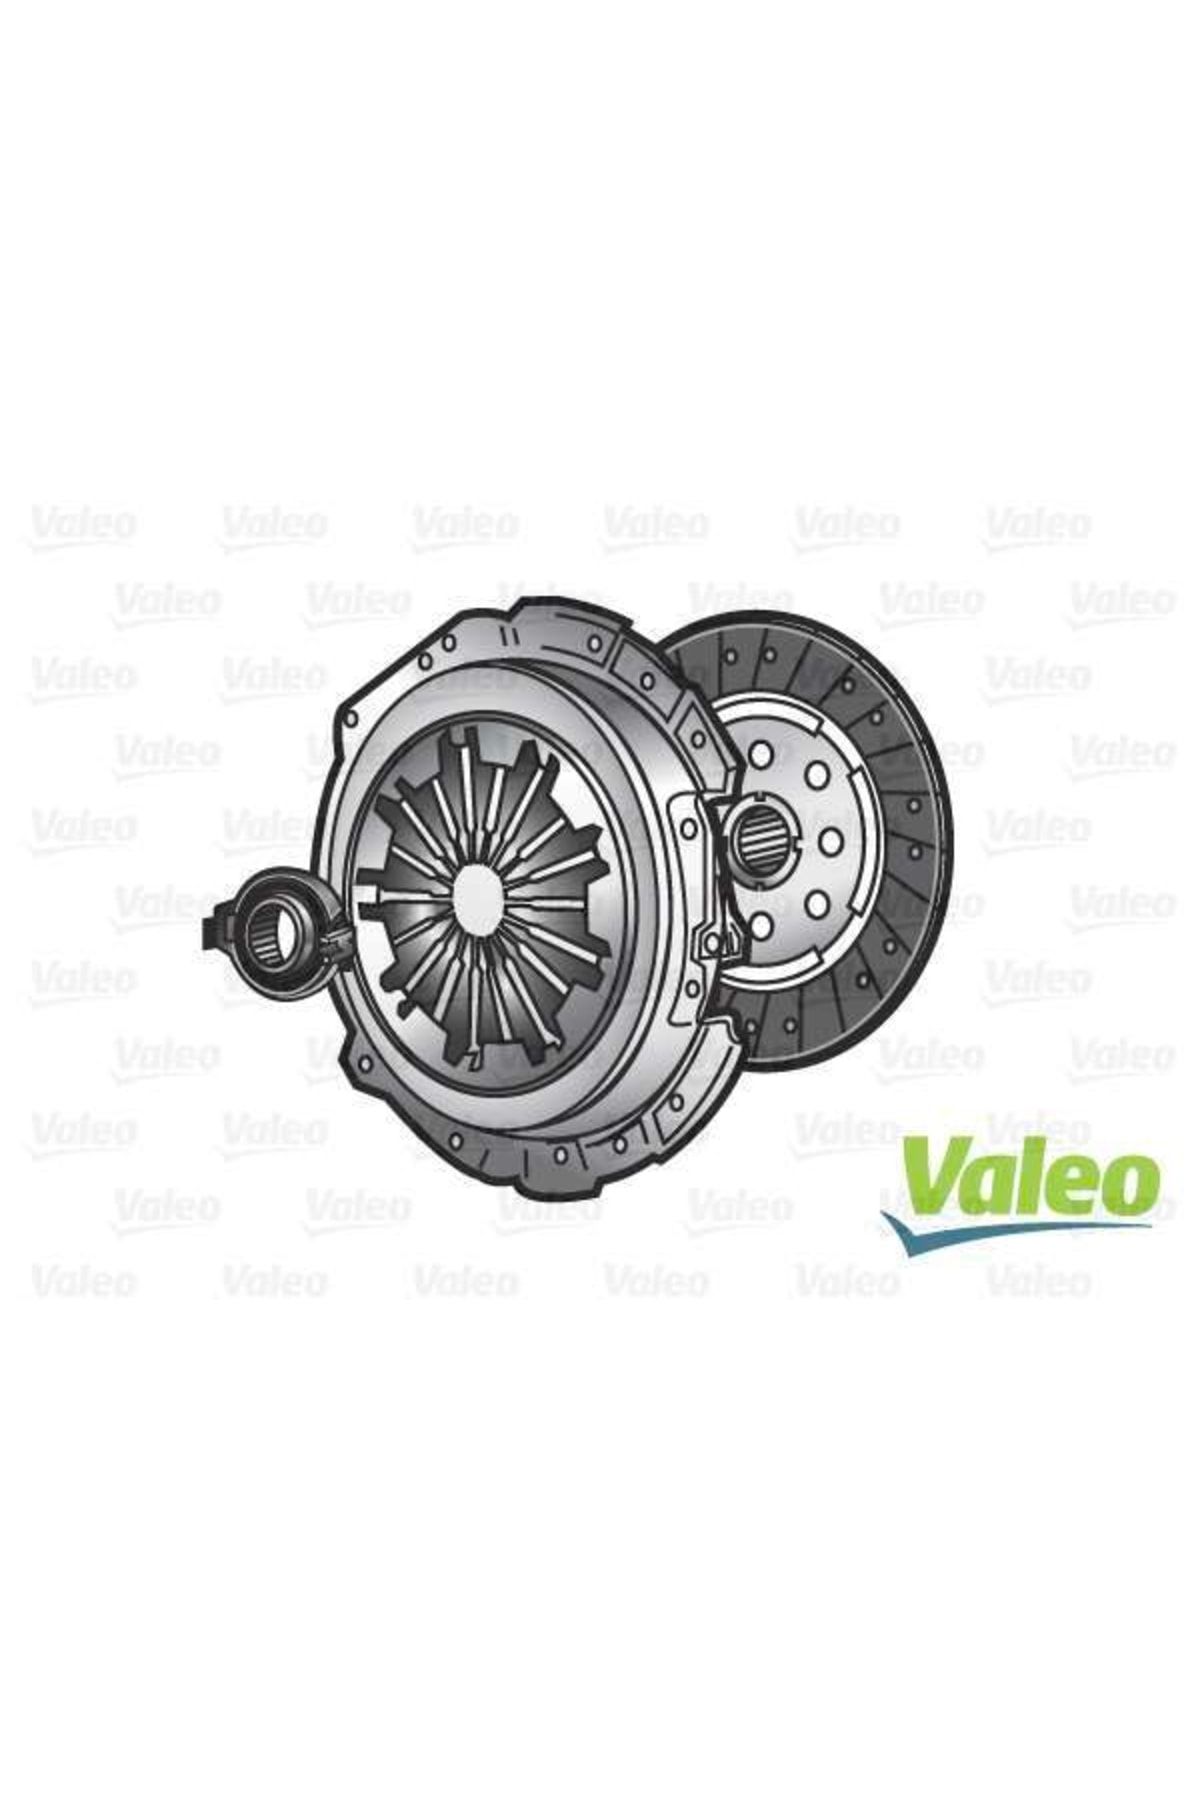 Valeo VOLANT DEBRIYAJ SETI RULMAN VW TRANSPORTER T5 2.0 TDI SABIT VOLANT-VALEO 835208-03L105266BH